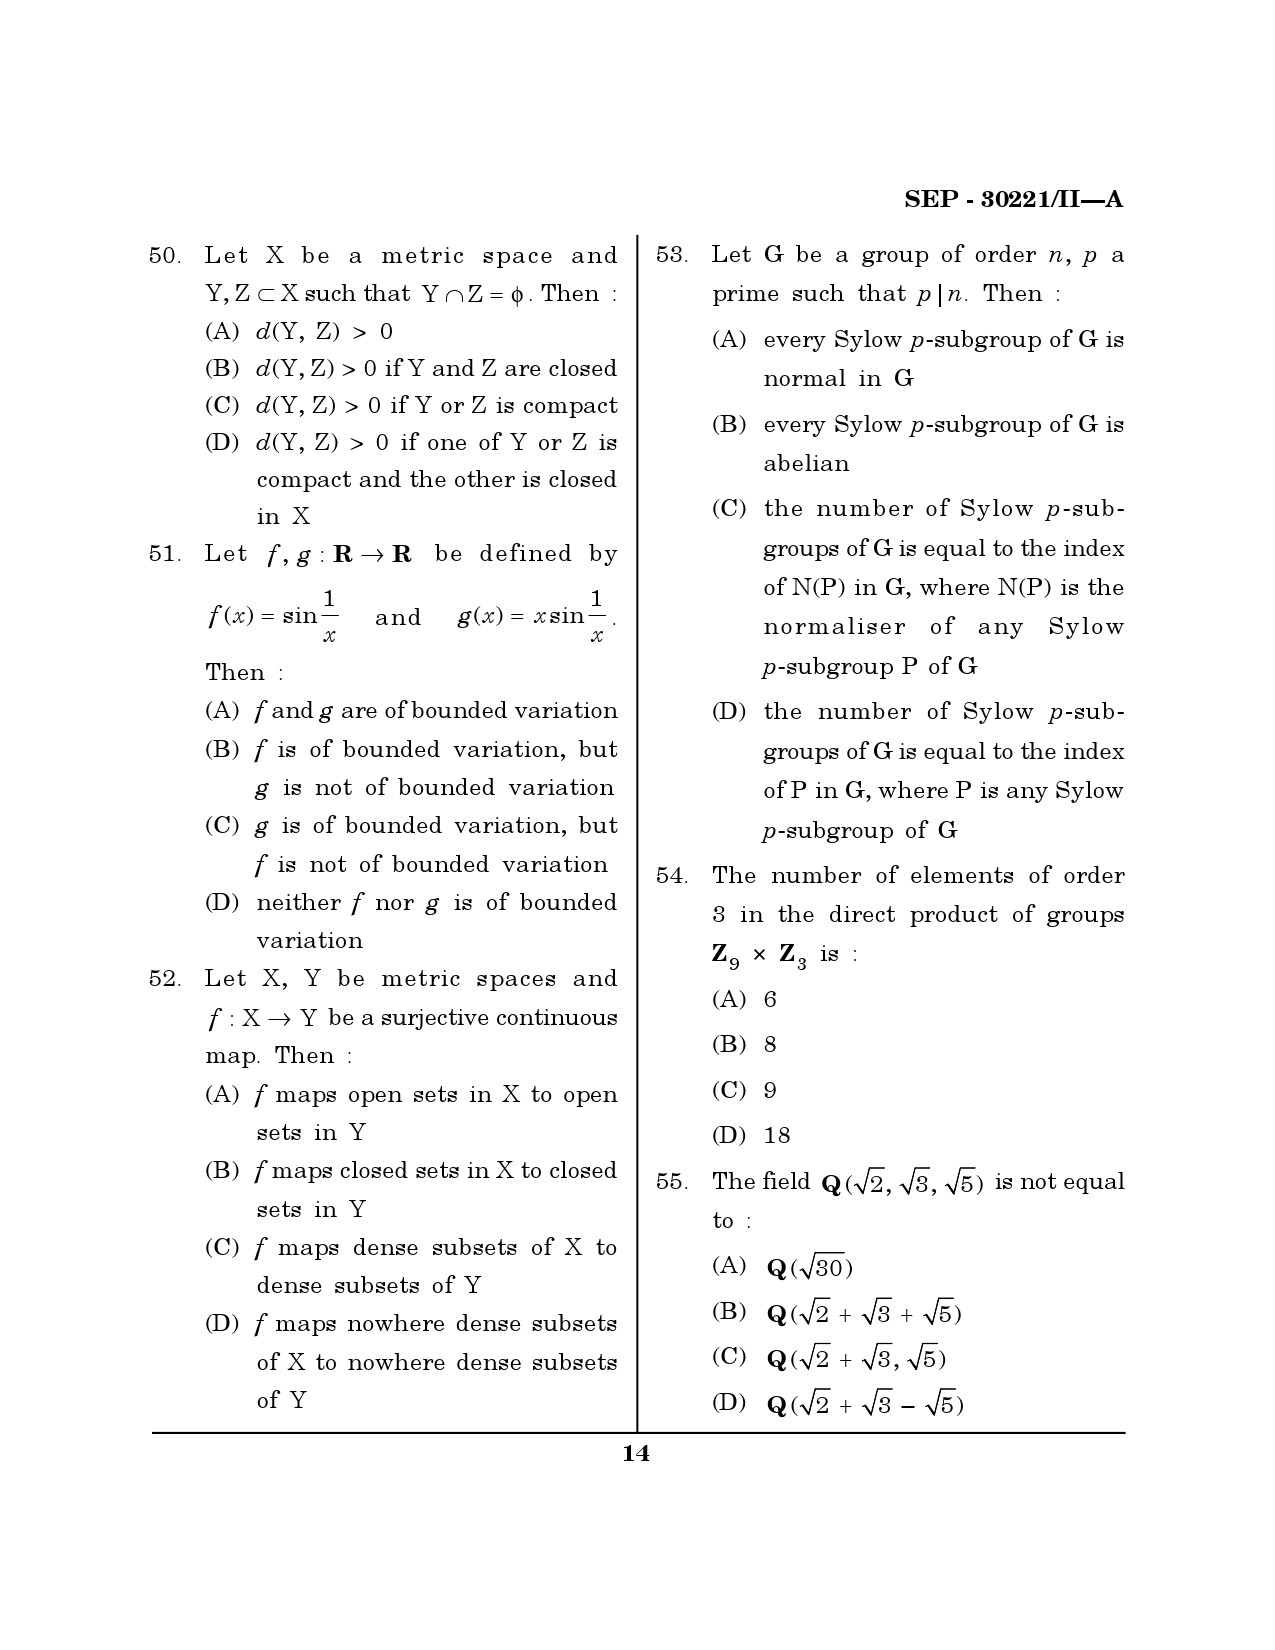 Maharashtra SET Mathematical Sciences Exam Question Paper September 2021 13